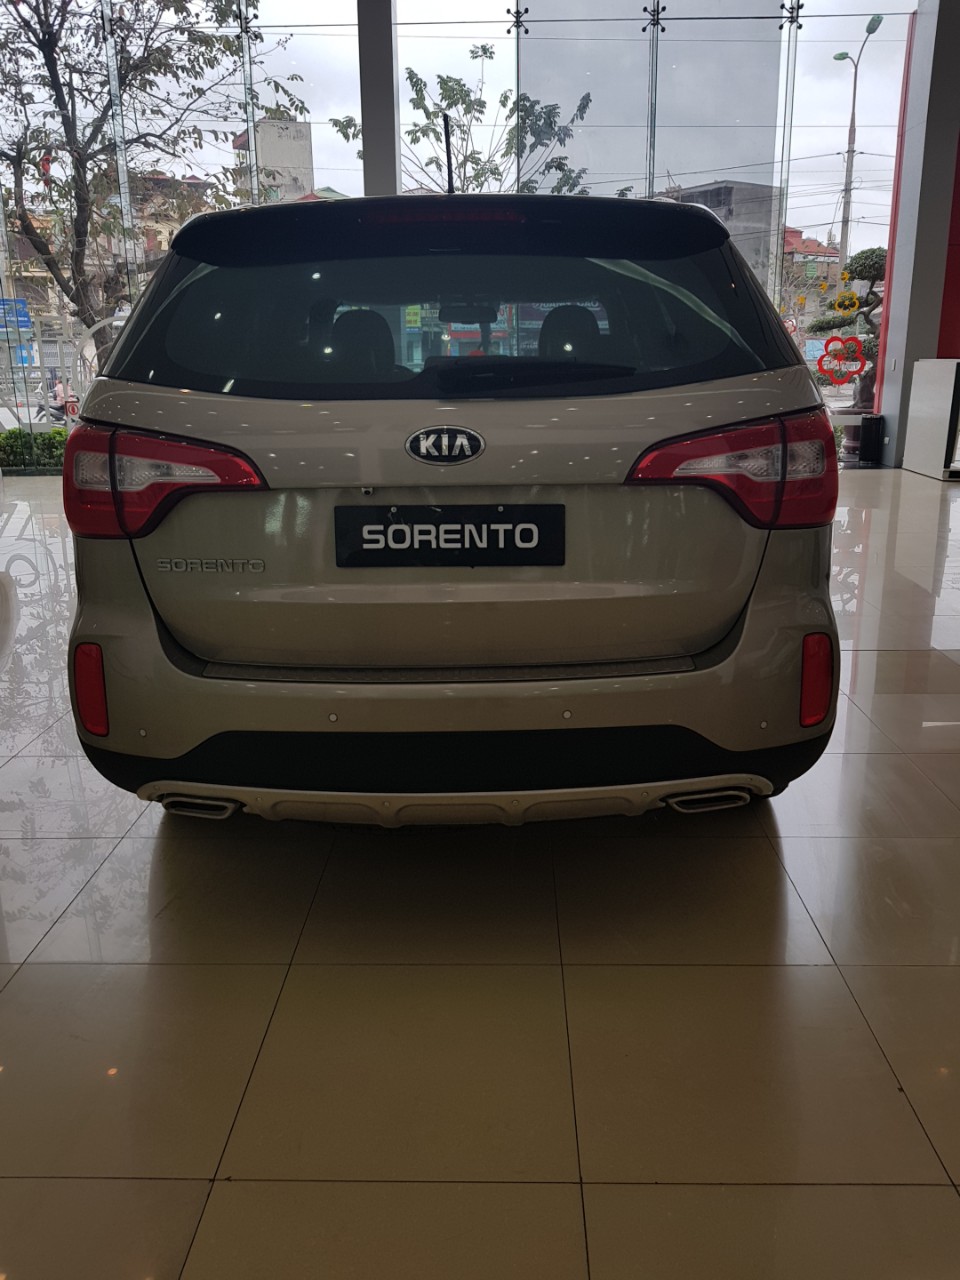 Kia Sorento GATH 2018 - Kia Sorento 7 chỗ, chiếc SUV đáng mua nhất trong tầm giá dưới 1 tỷ _ Liên hệ: 0981.579.692 để được hỗ trợ tốt nhất